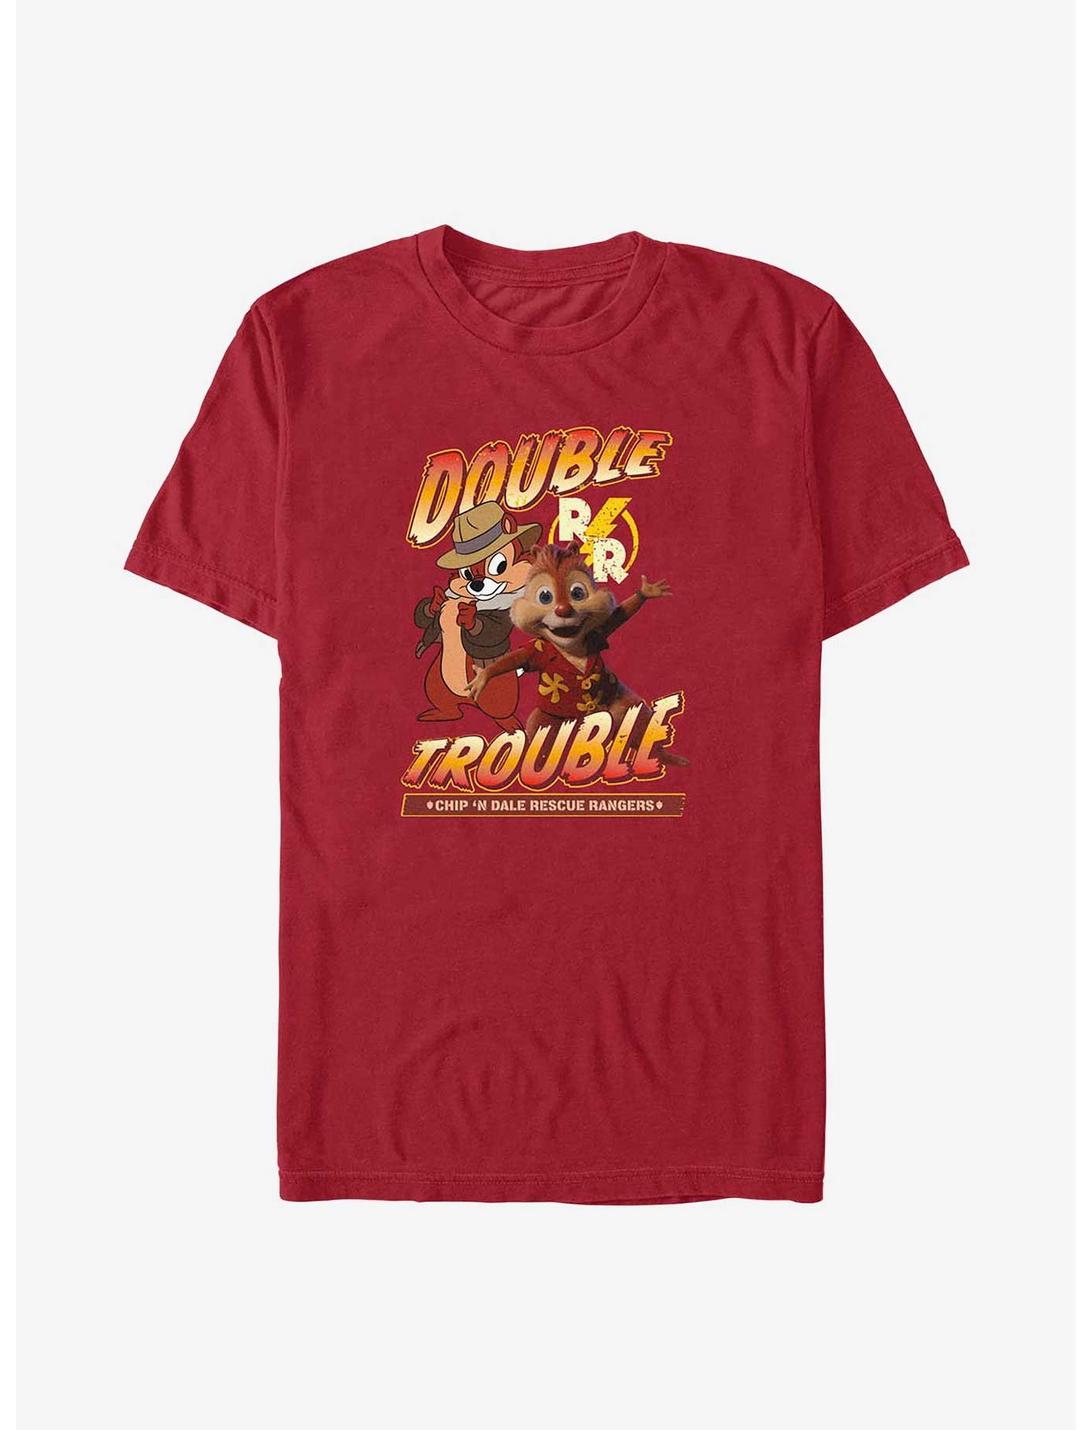 Disney Chip 'n Dale: Rescue Rangers Double Trouble T-Shirt, CARDINAL, hi-res